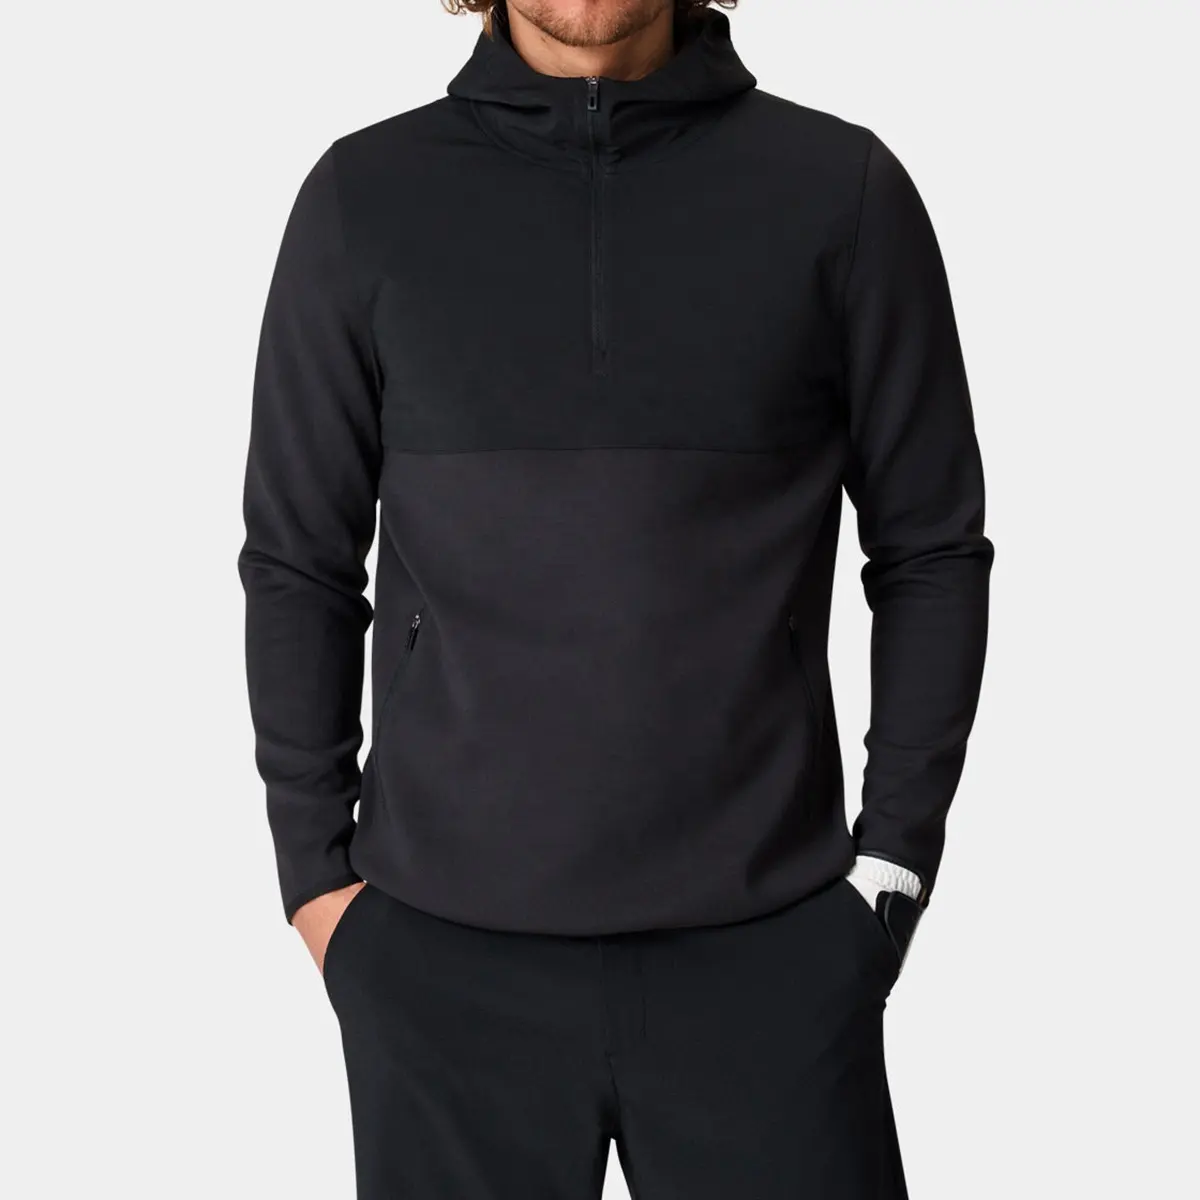 Nouveautés 1/4 Zip Pullover Golf Polyester Spandex Noir Léger Slim Fit Sports Golf Hoodie Pour Hommes